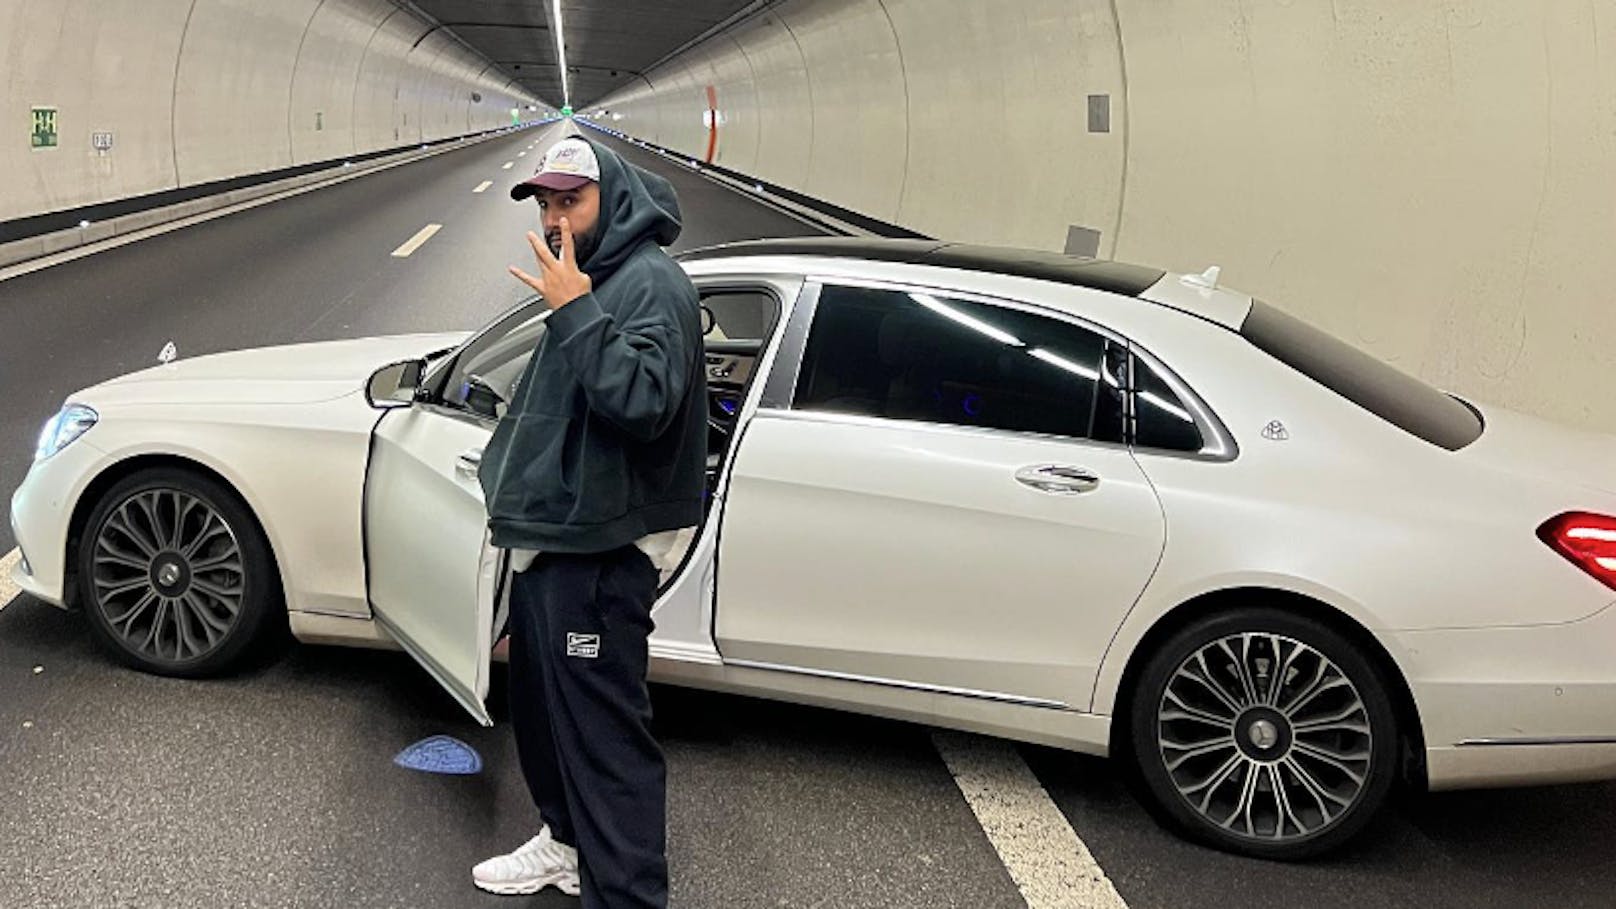 Rapper hält mitten in Tunnel, um für Fotos zu posieren